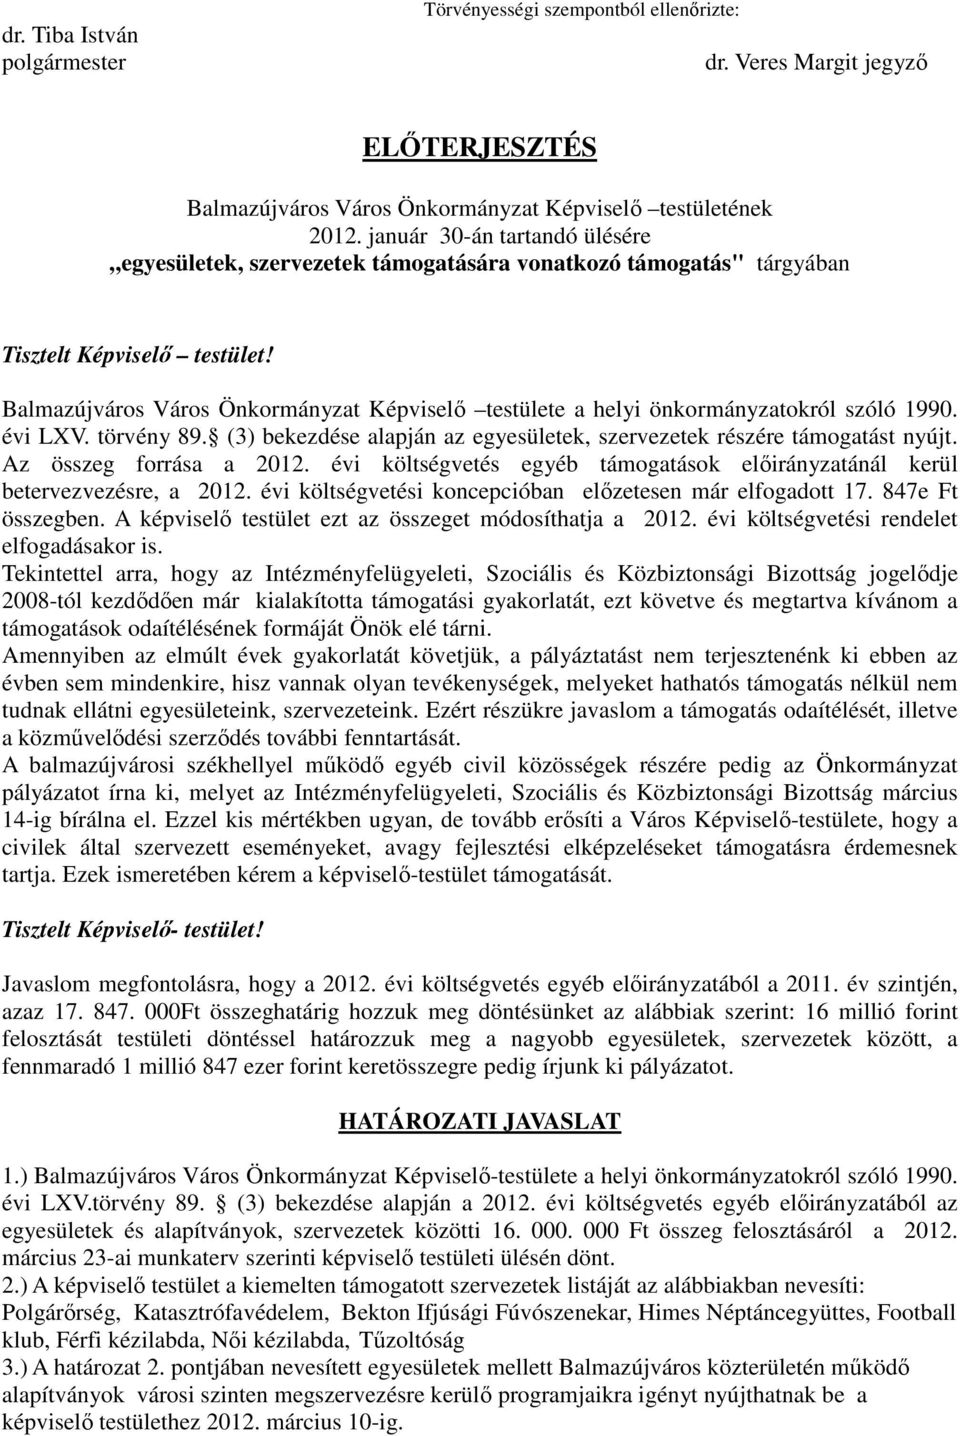 Balmazújváros Város Önkormányzat Képviselı testülete a helyi önkormányzatokról szóló 1990. évi LXV. törvény 89. (3) bekezdése alapján az egyesületek, szervezetek részére támogatást nyújt.